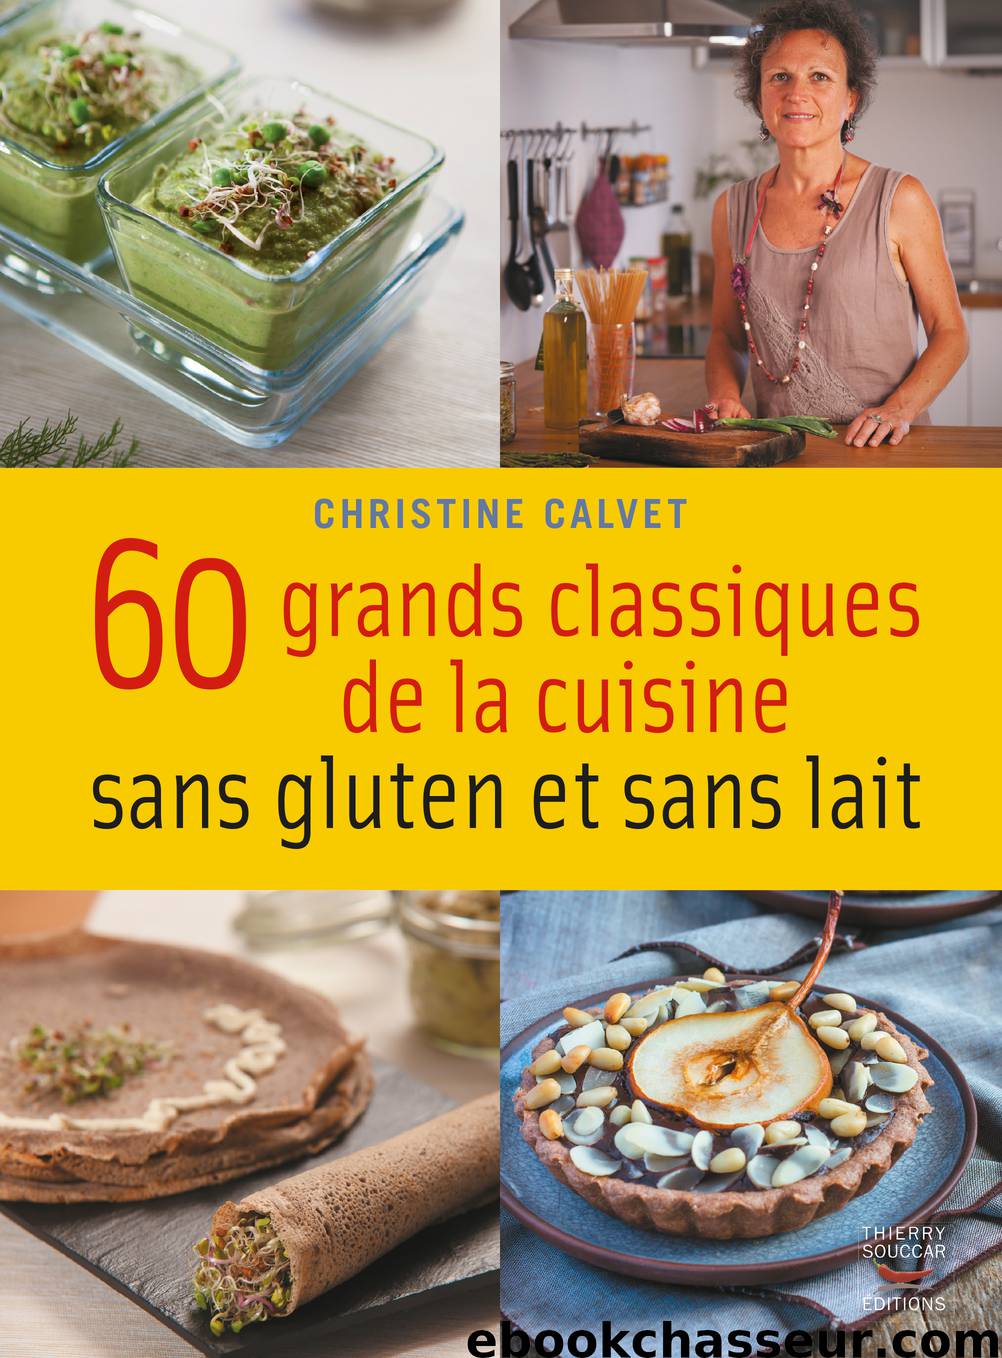 60 grands classiques de la cuisine sans gluten et sans lait by Christine Calvet